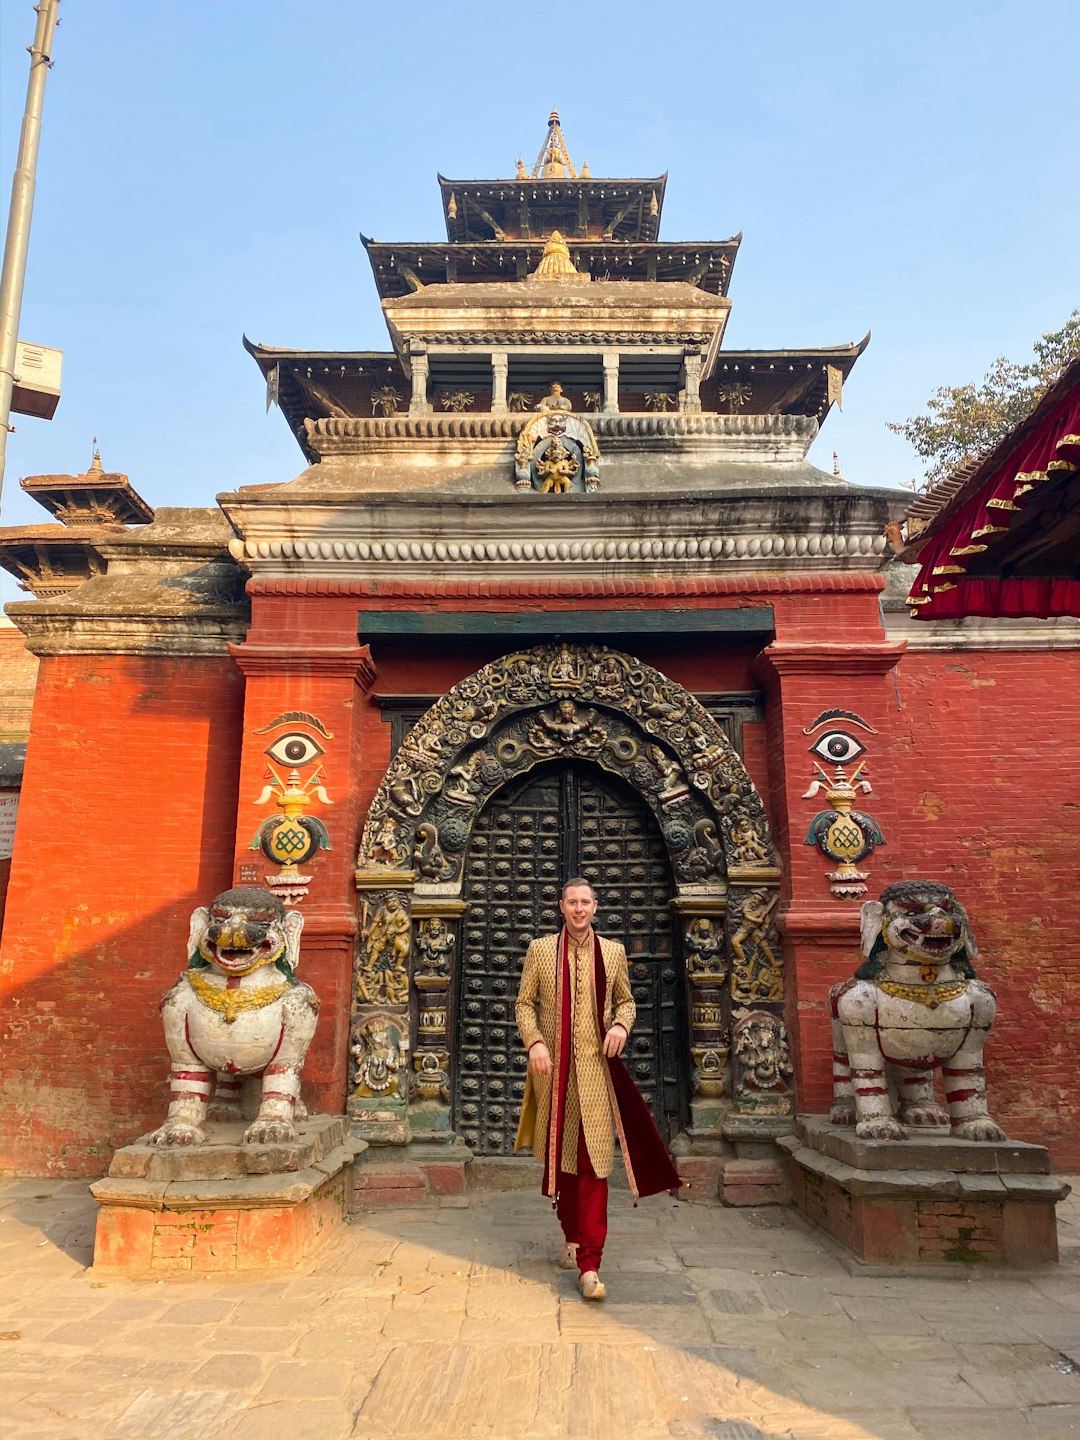 Temple photo spot Kàtmandu Kathmandu Durbar Square